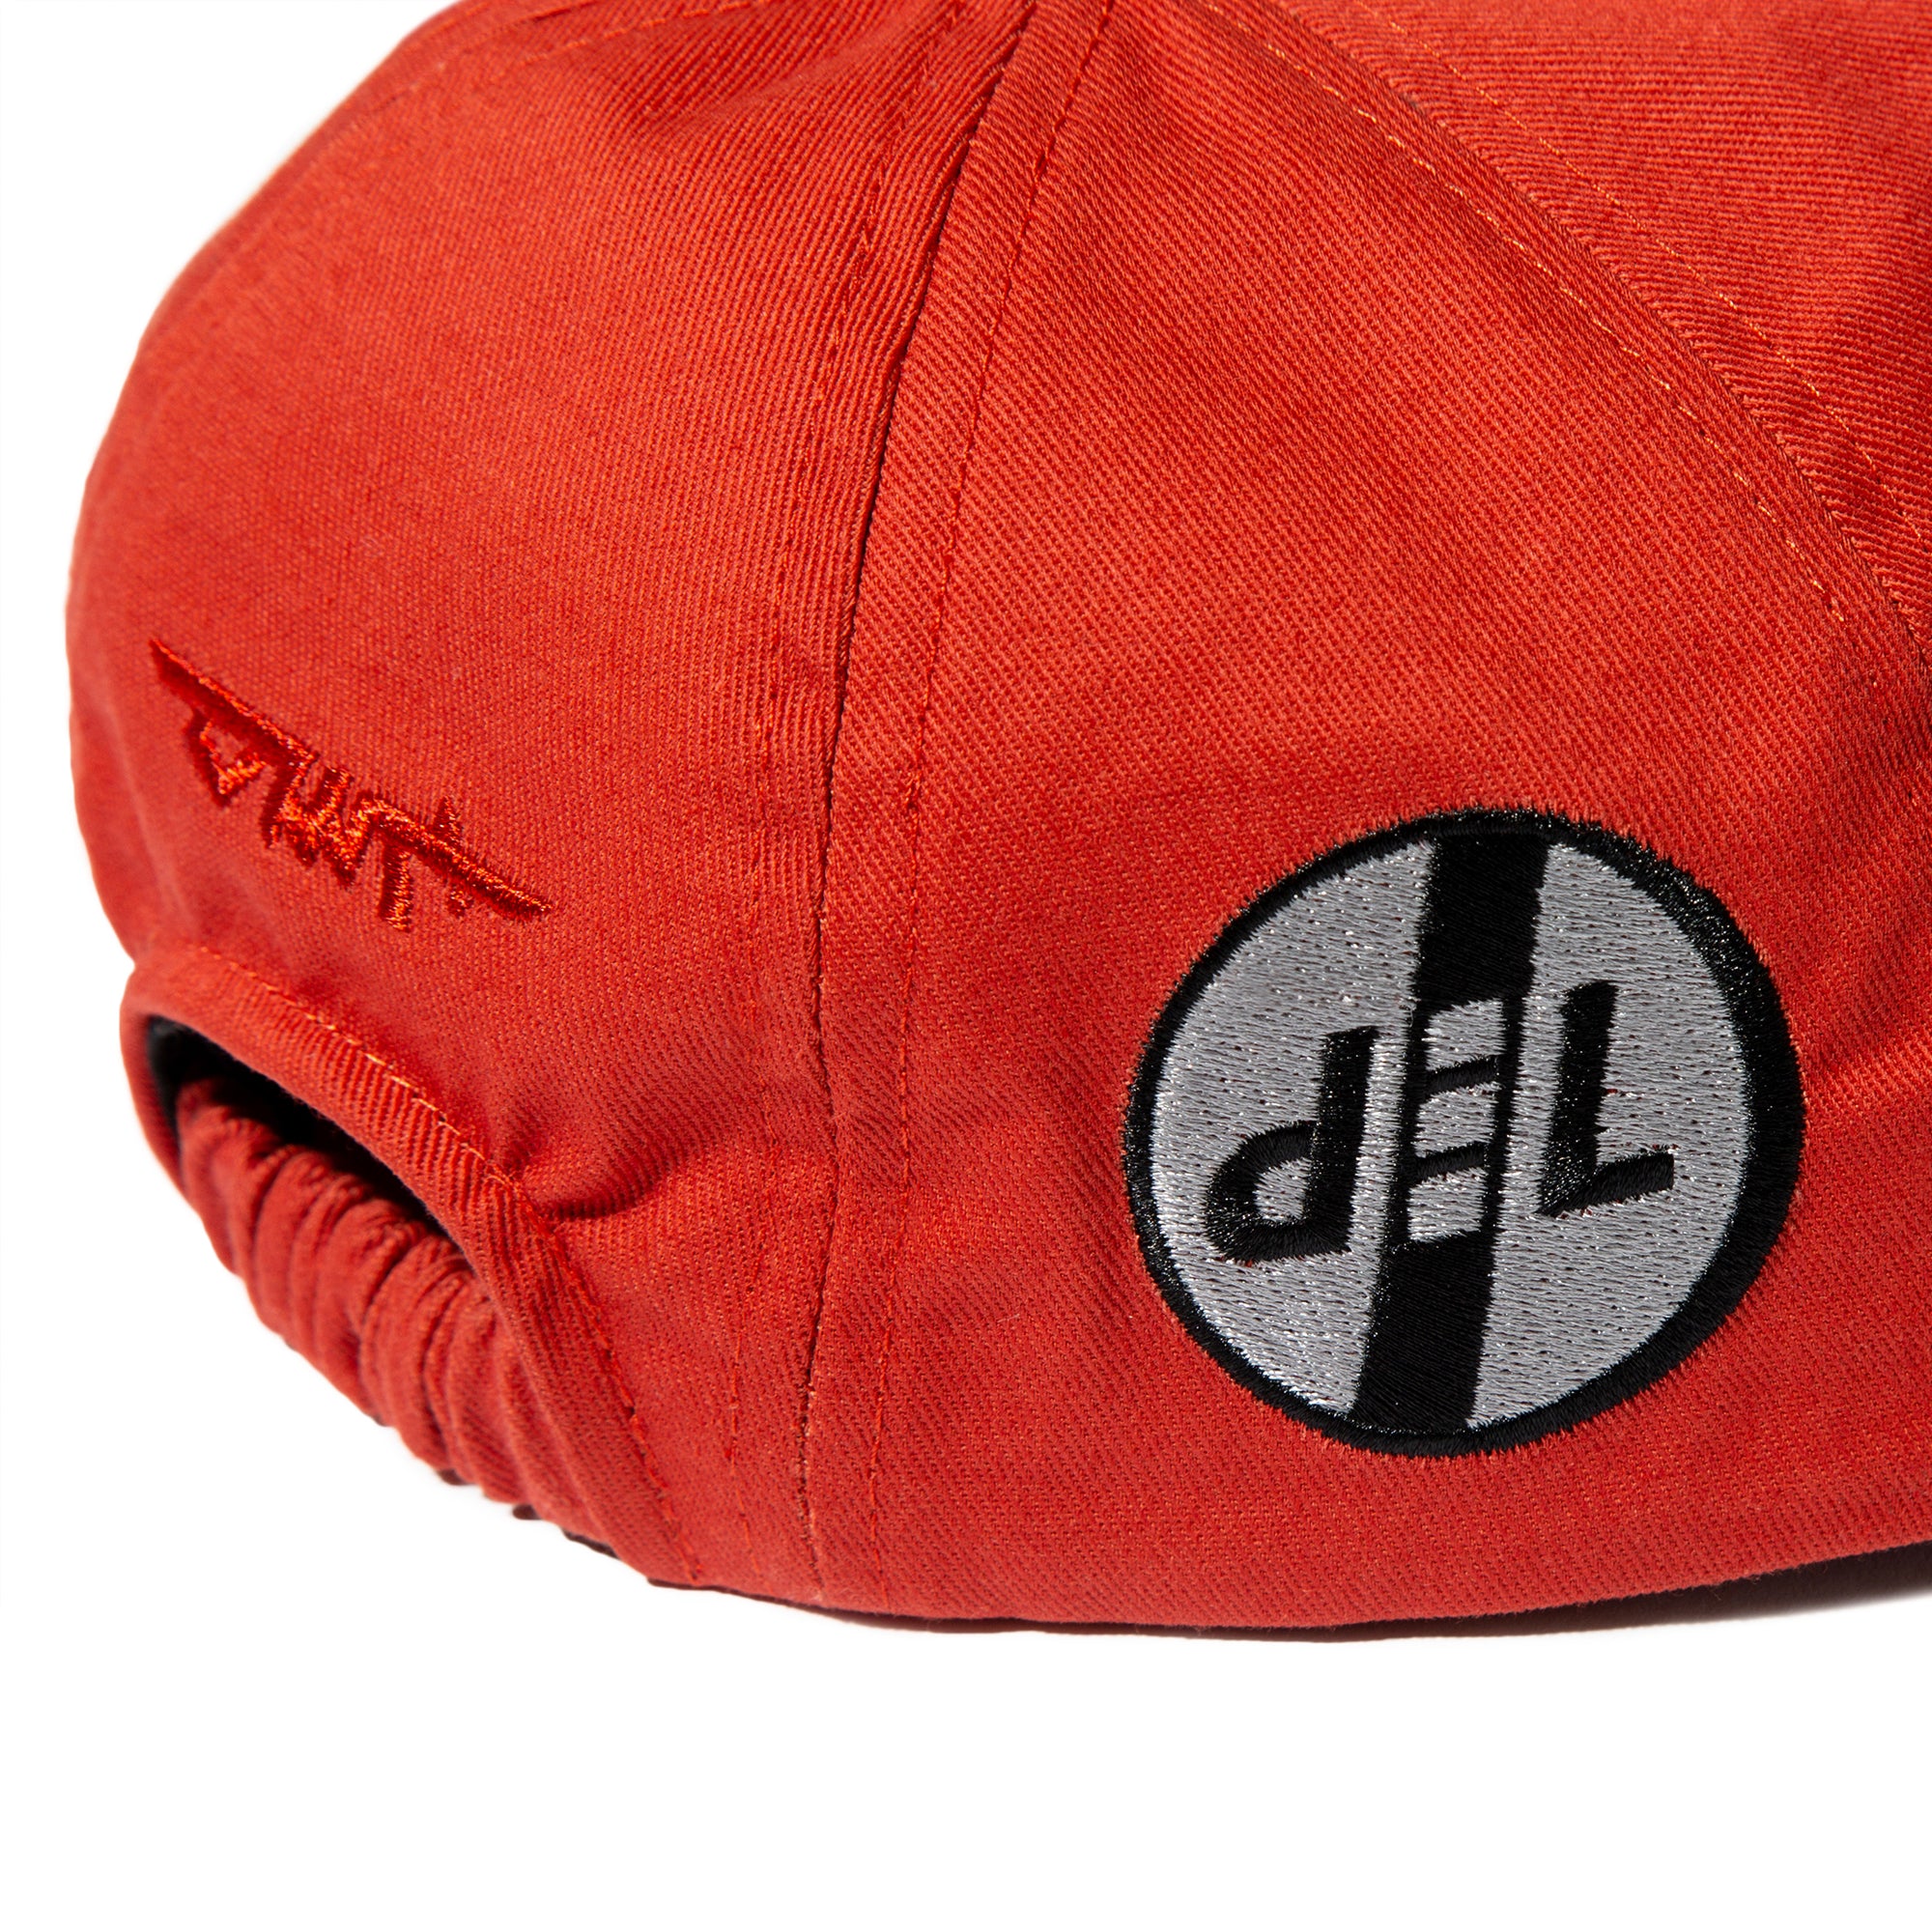 DML-A/P 6 PANEL CAP (Red)